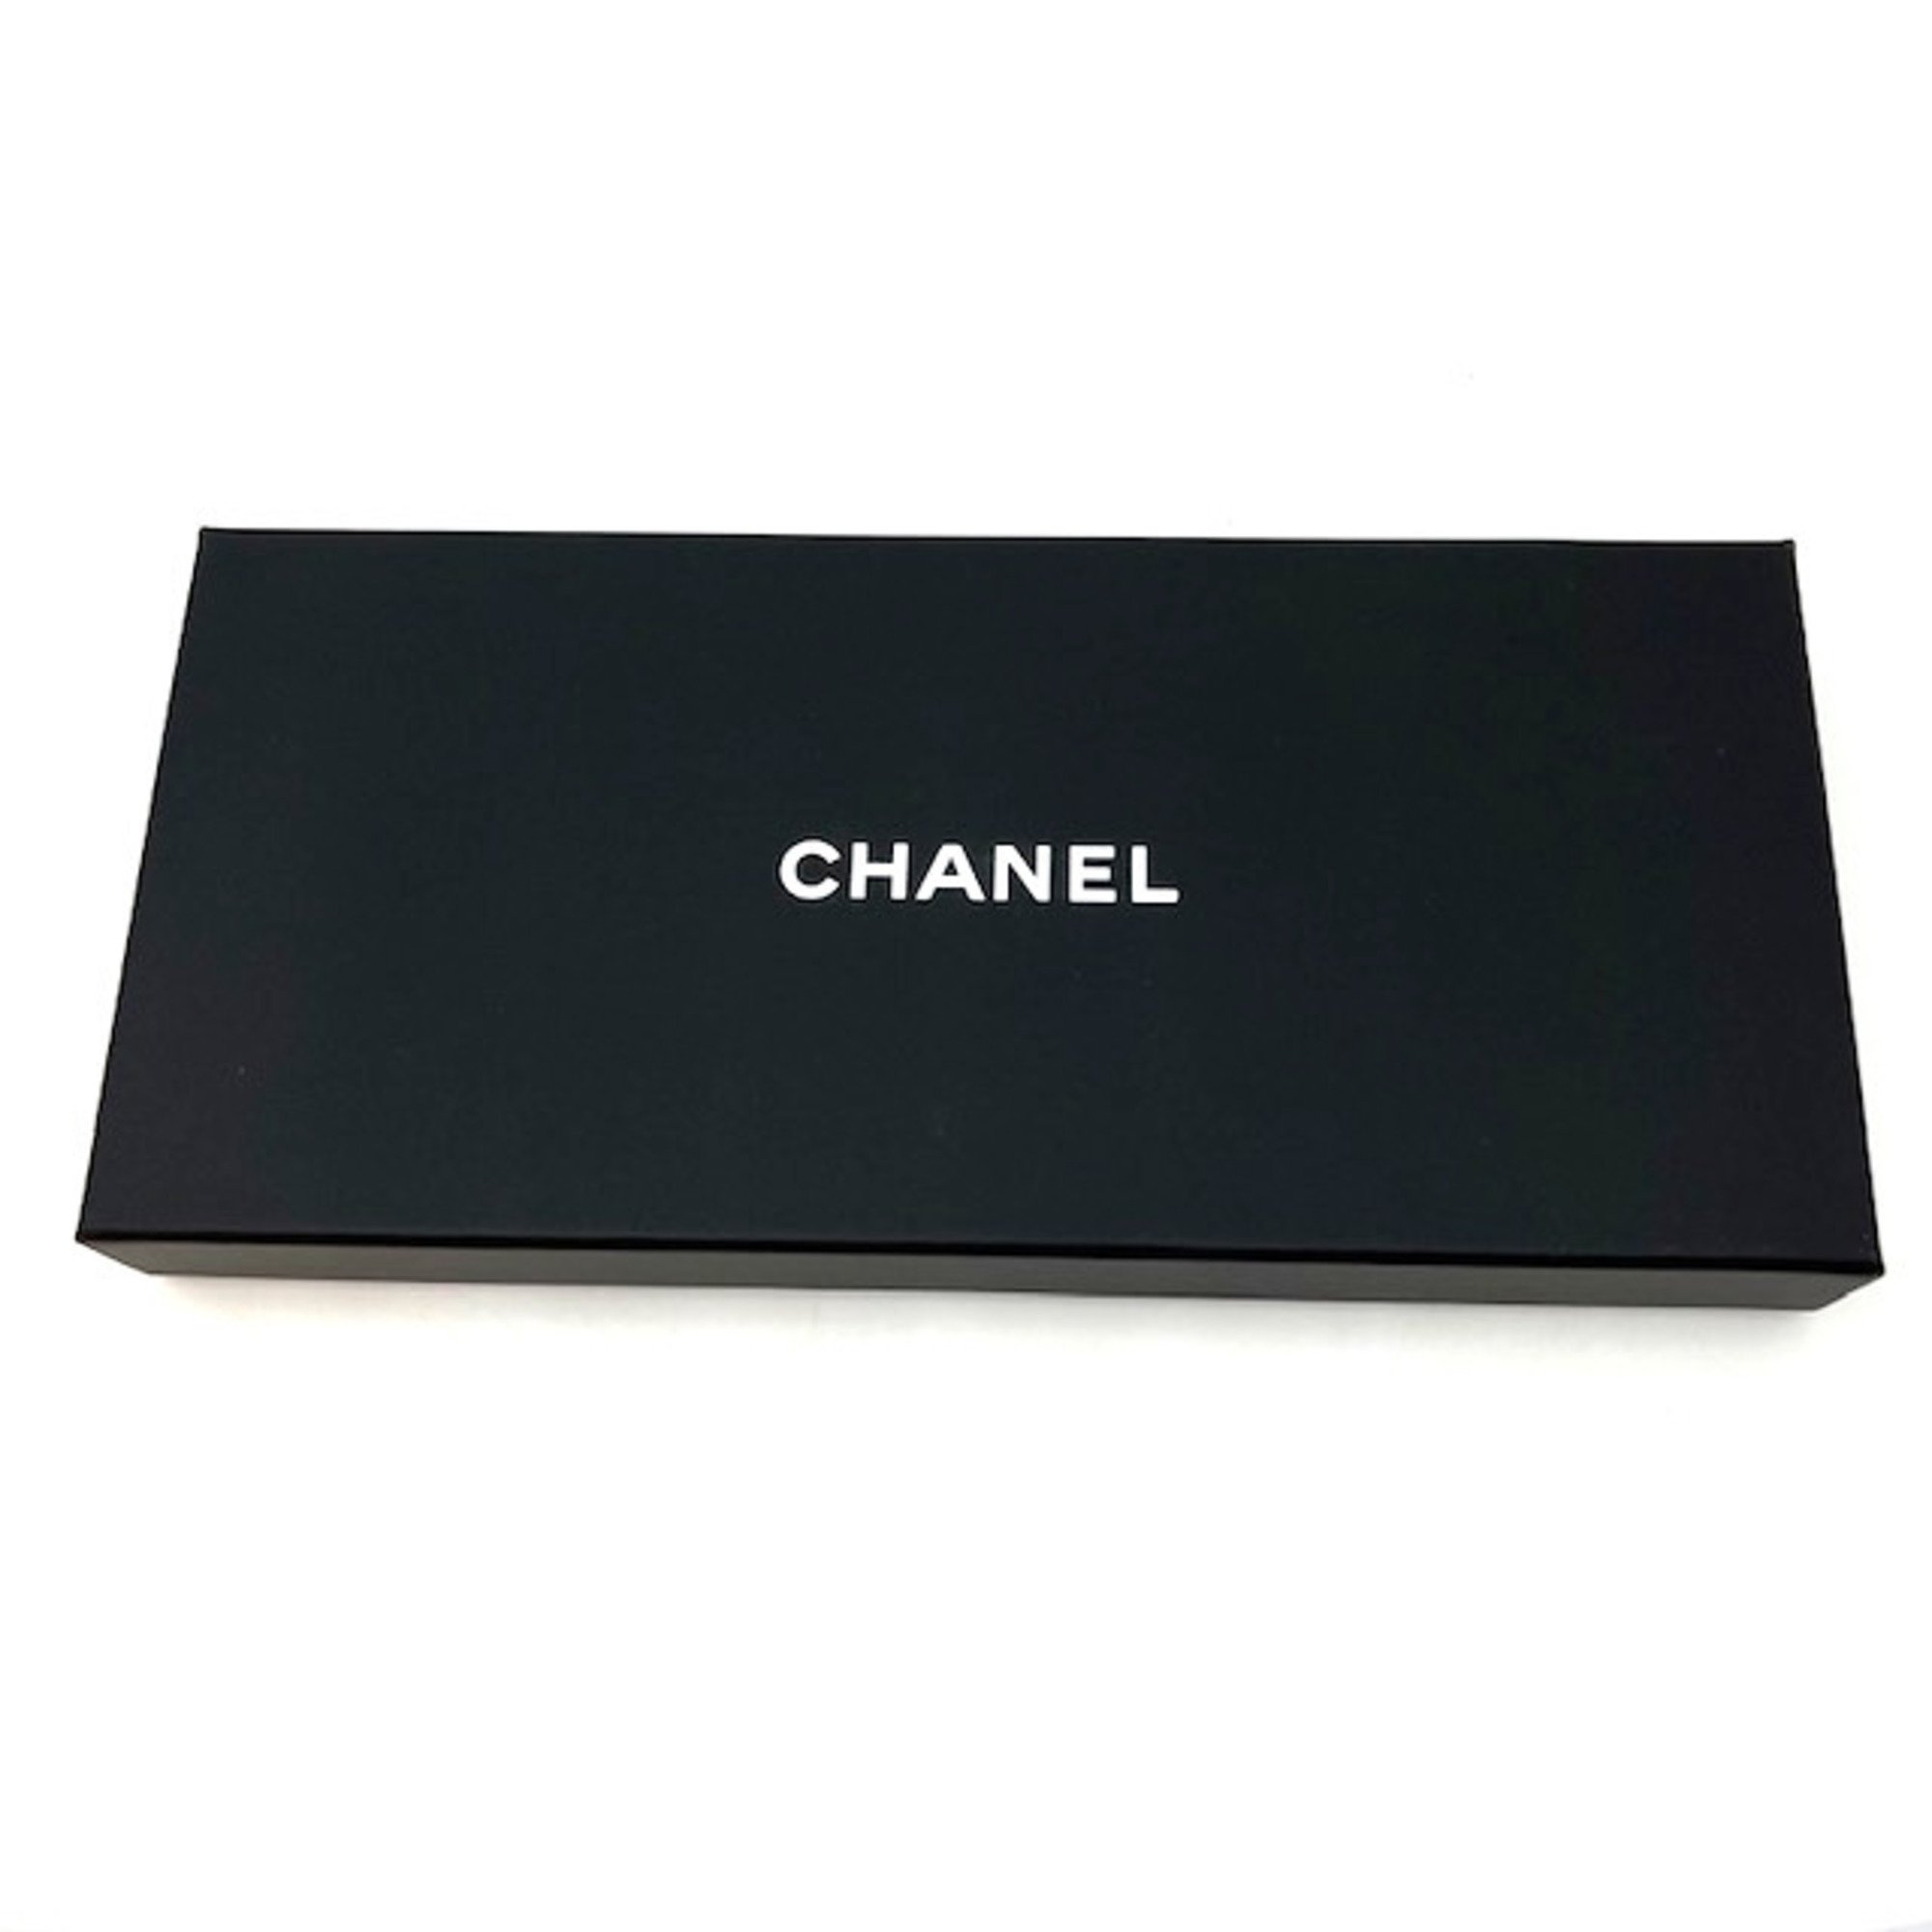 CHANEL Chanel scrunchie set chain motif silk ladies pink